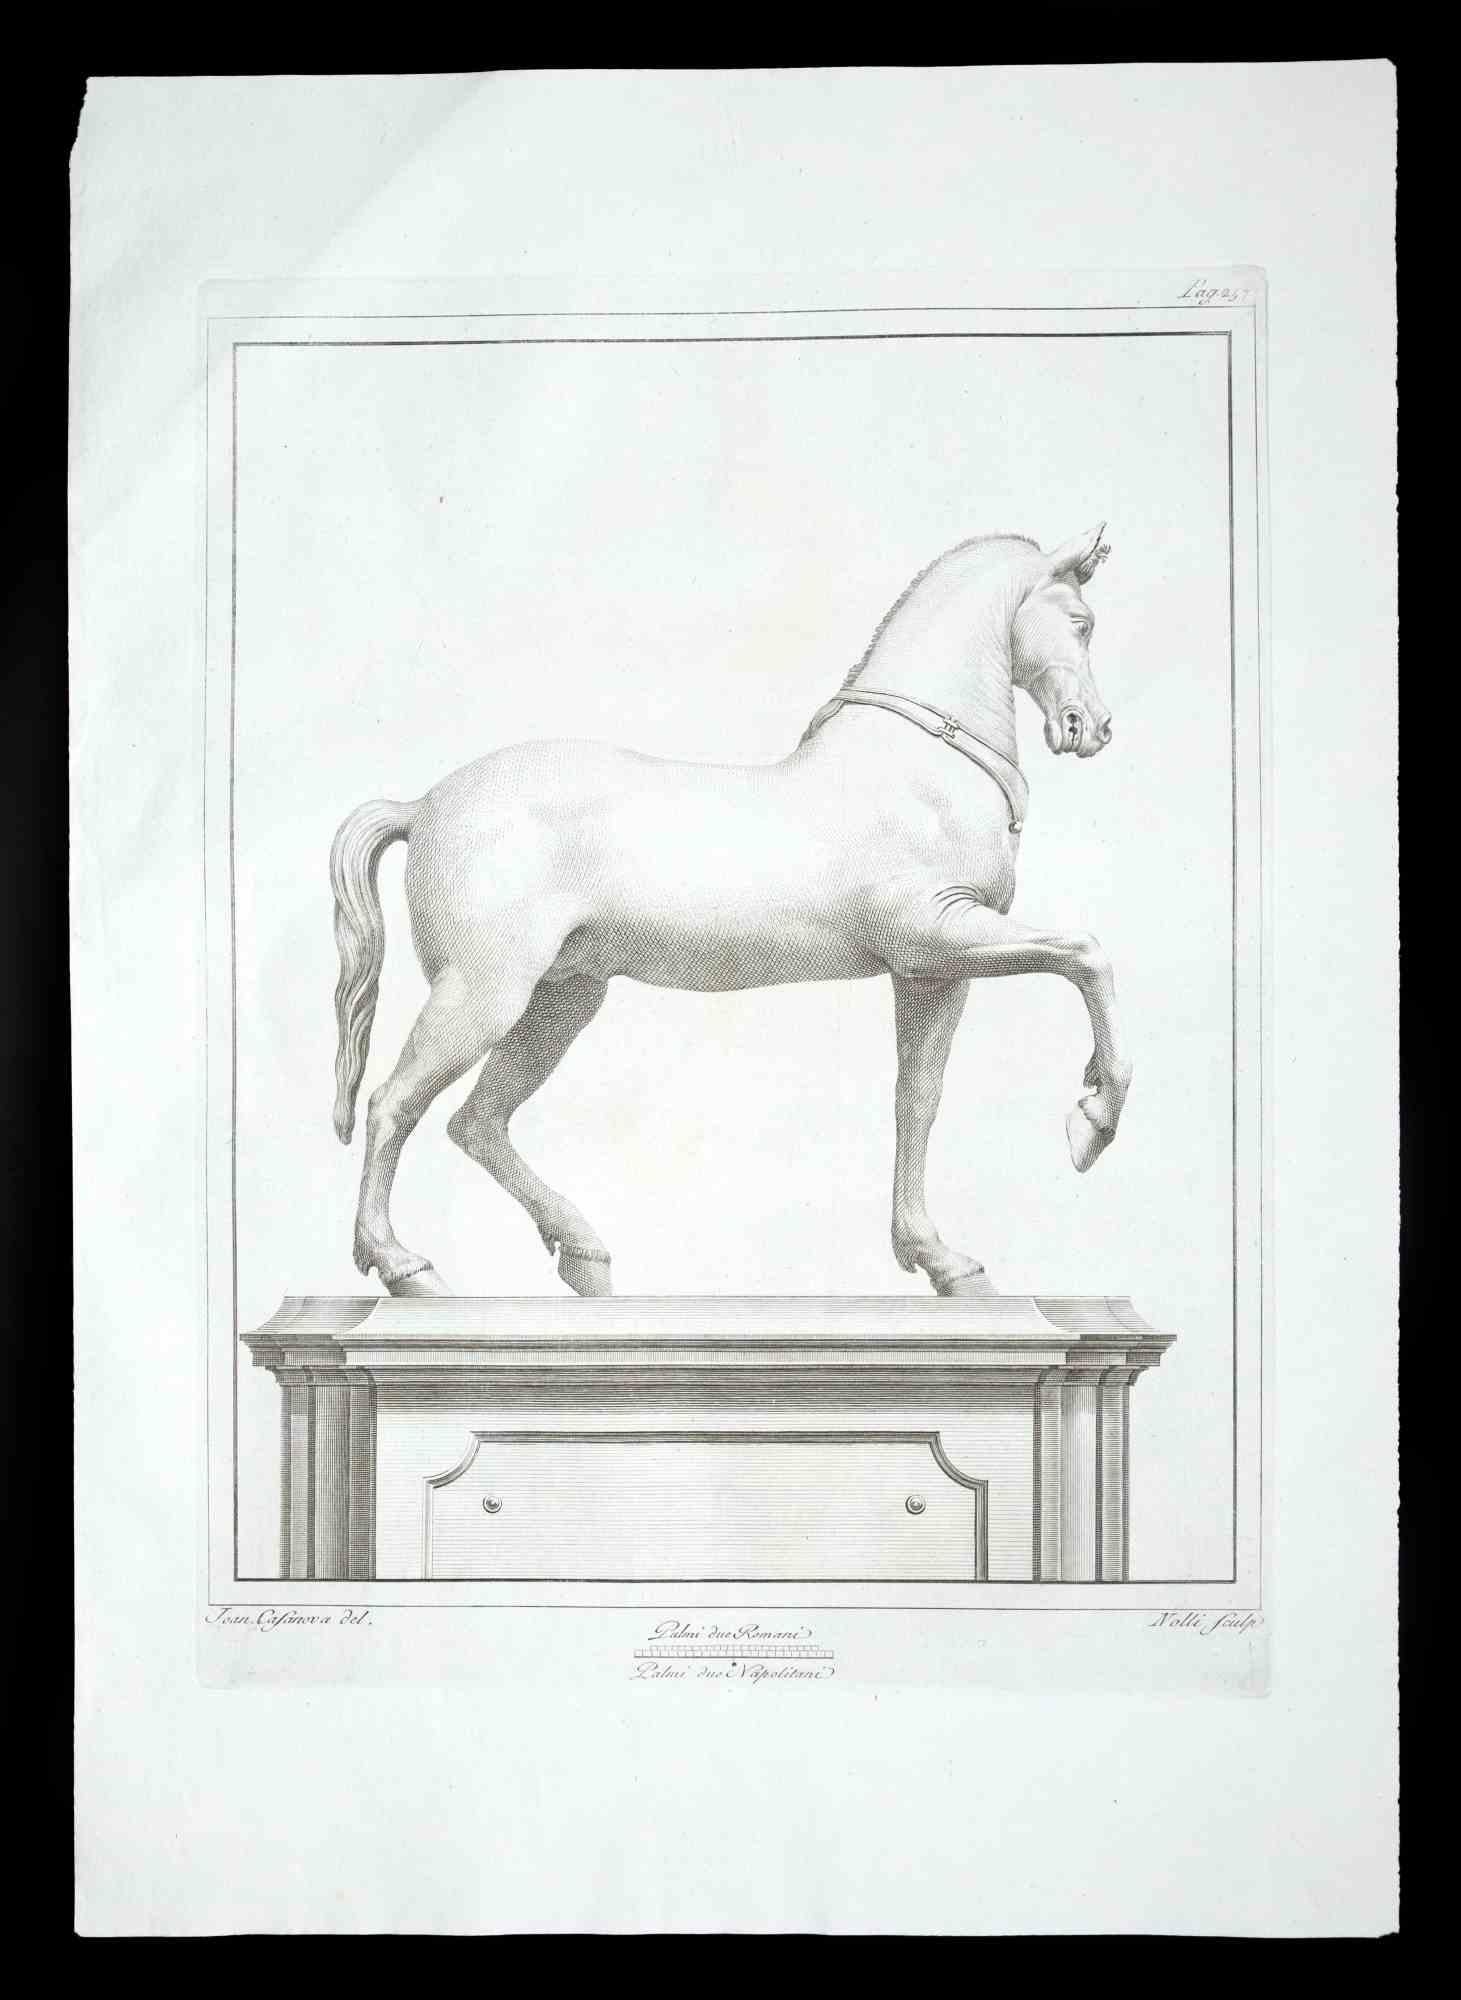 Statue romaine antique d'un cheval, de la série "Antiquités d'Herculanum", est une gravure originale sur papier réalisée par Carol Nolli au XVIIIe siècle.

Signé sur la plaque, en bas à droite.

Bonnes conditions à l'exception d'une petite coupure